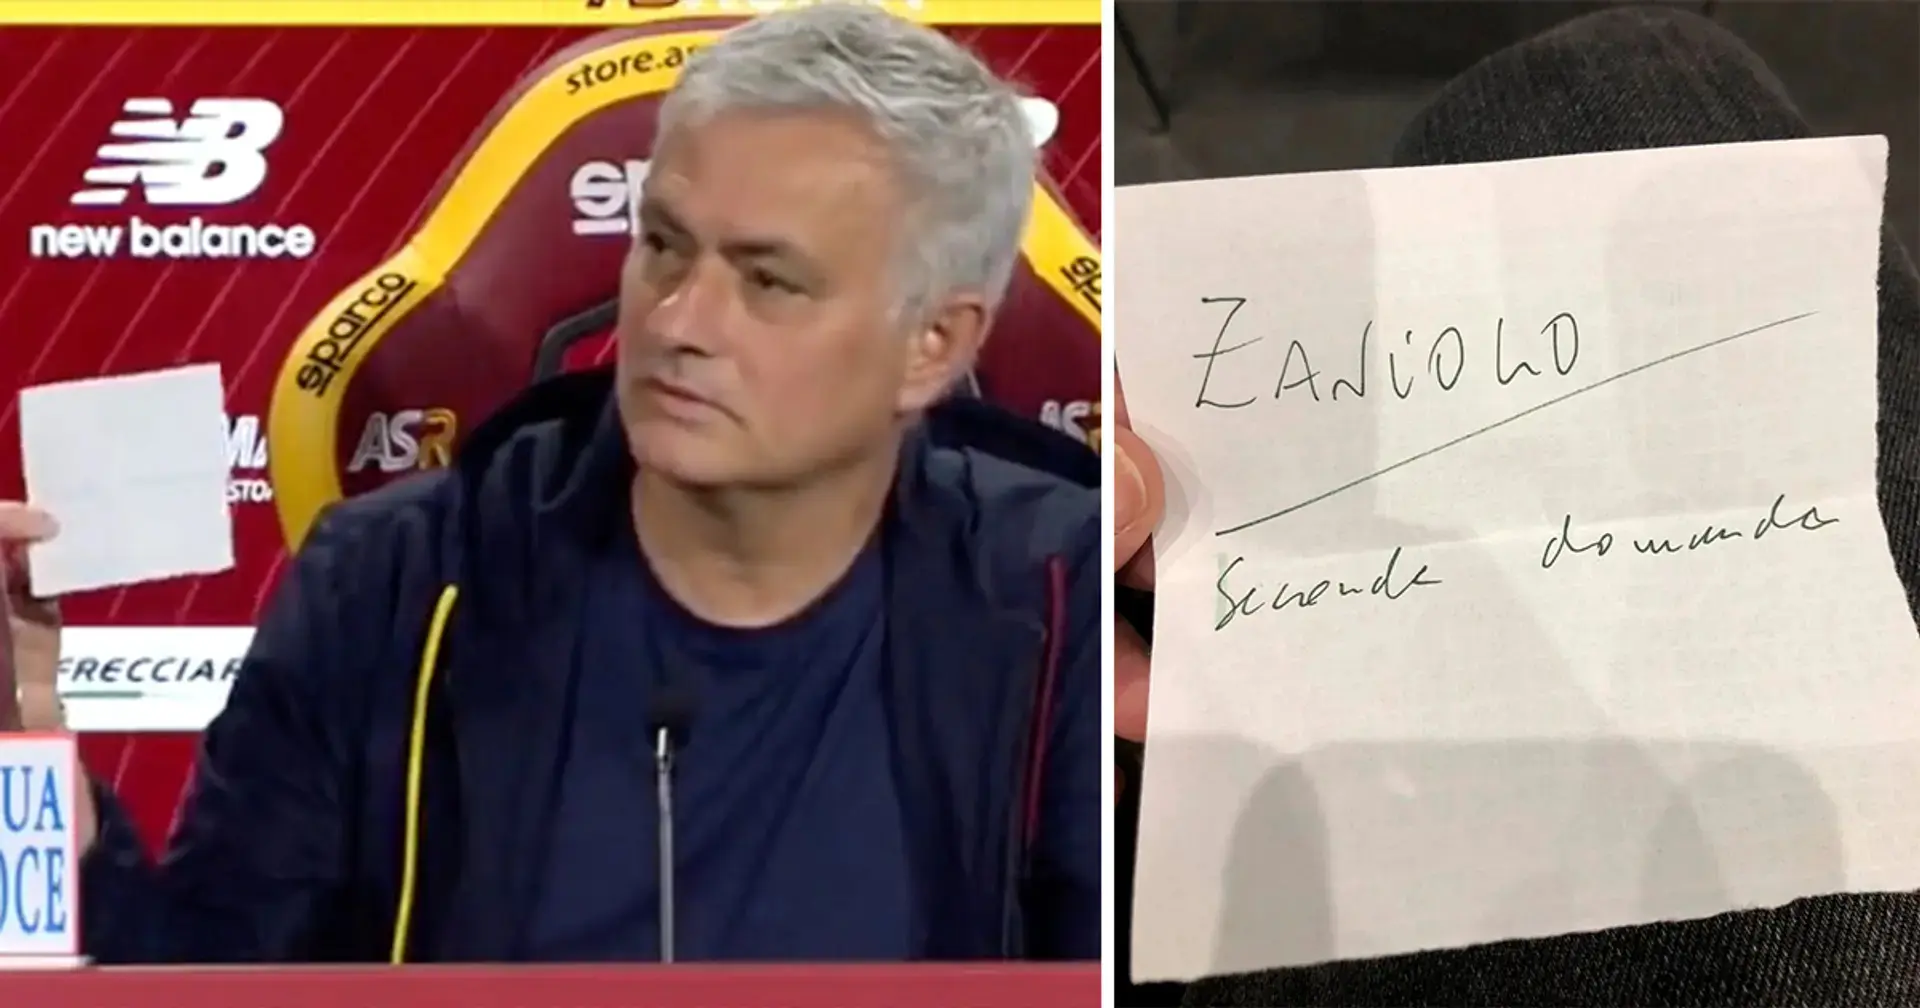 'Zaniolo - segunda pregunta': José Mourinho sorprende al predecir en el papel pregunta sobre Nico Zaniolo